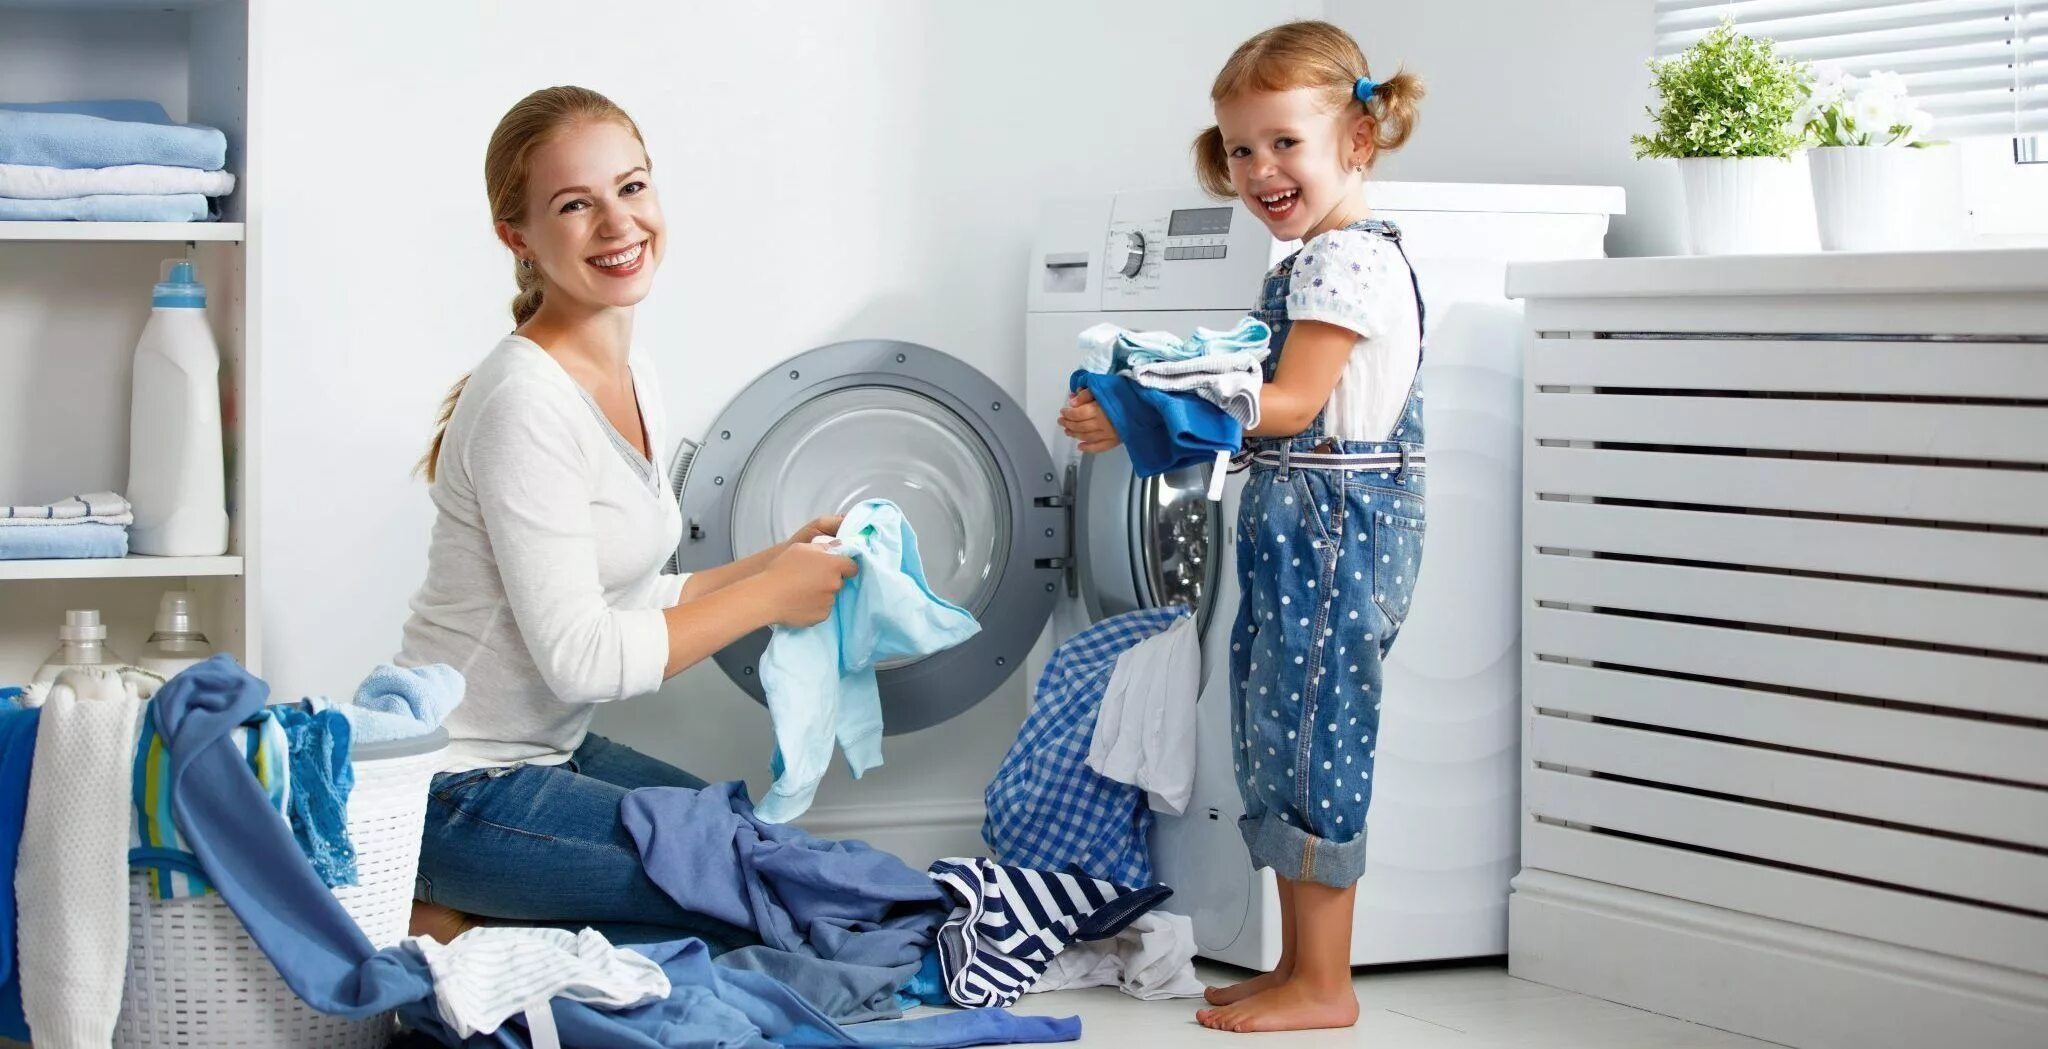 Мама стиральная машина. Мама стирает. Стирка с детьми. Ребенок возле стиральной машины. Стиральная машина и семья.